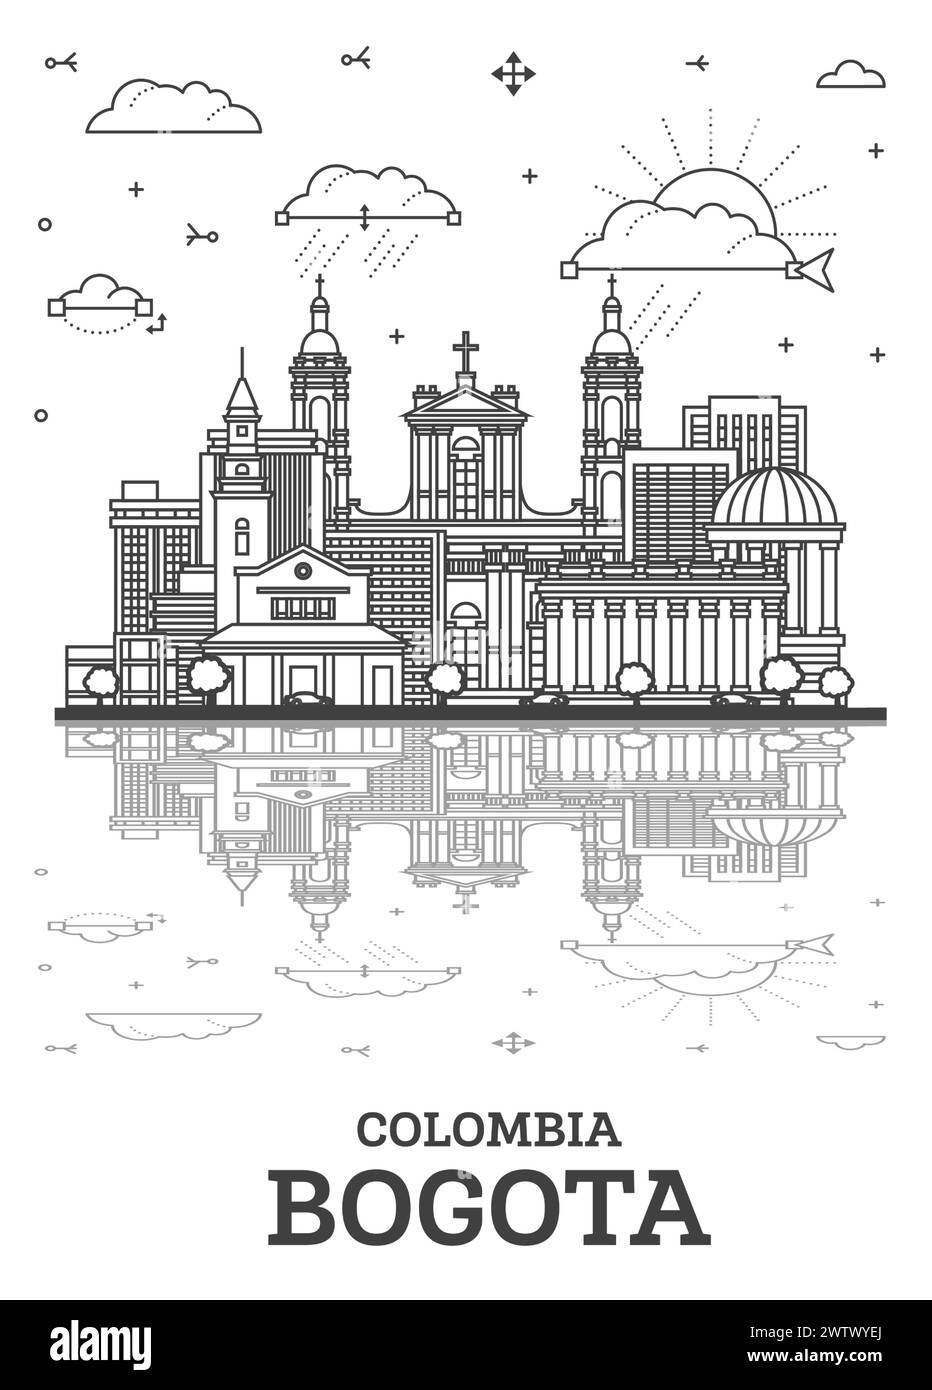 Aperçu Bogota Colombia City Skyline avec bâtiments historiques et réflexions isolés sur blanc. Illustration vectorielle. Paysage urbain de Bogota avec des points de repère. Illustration de Vecteur